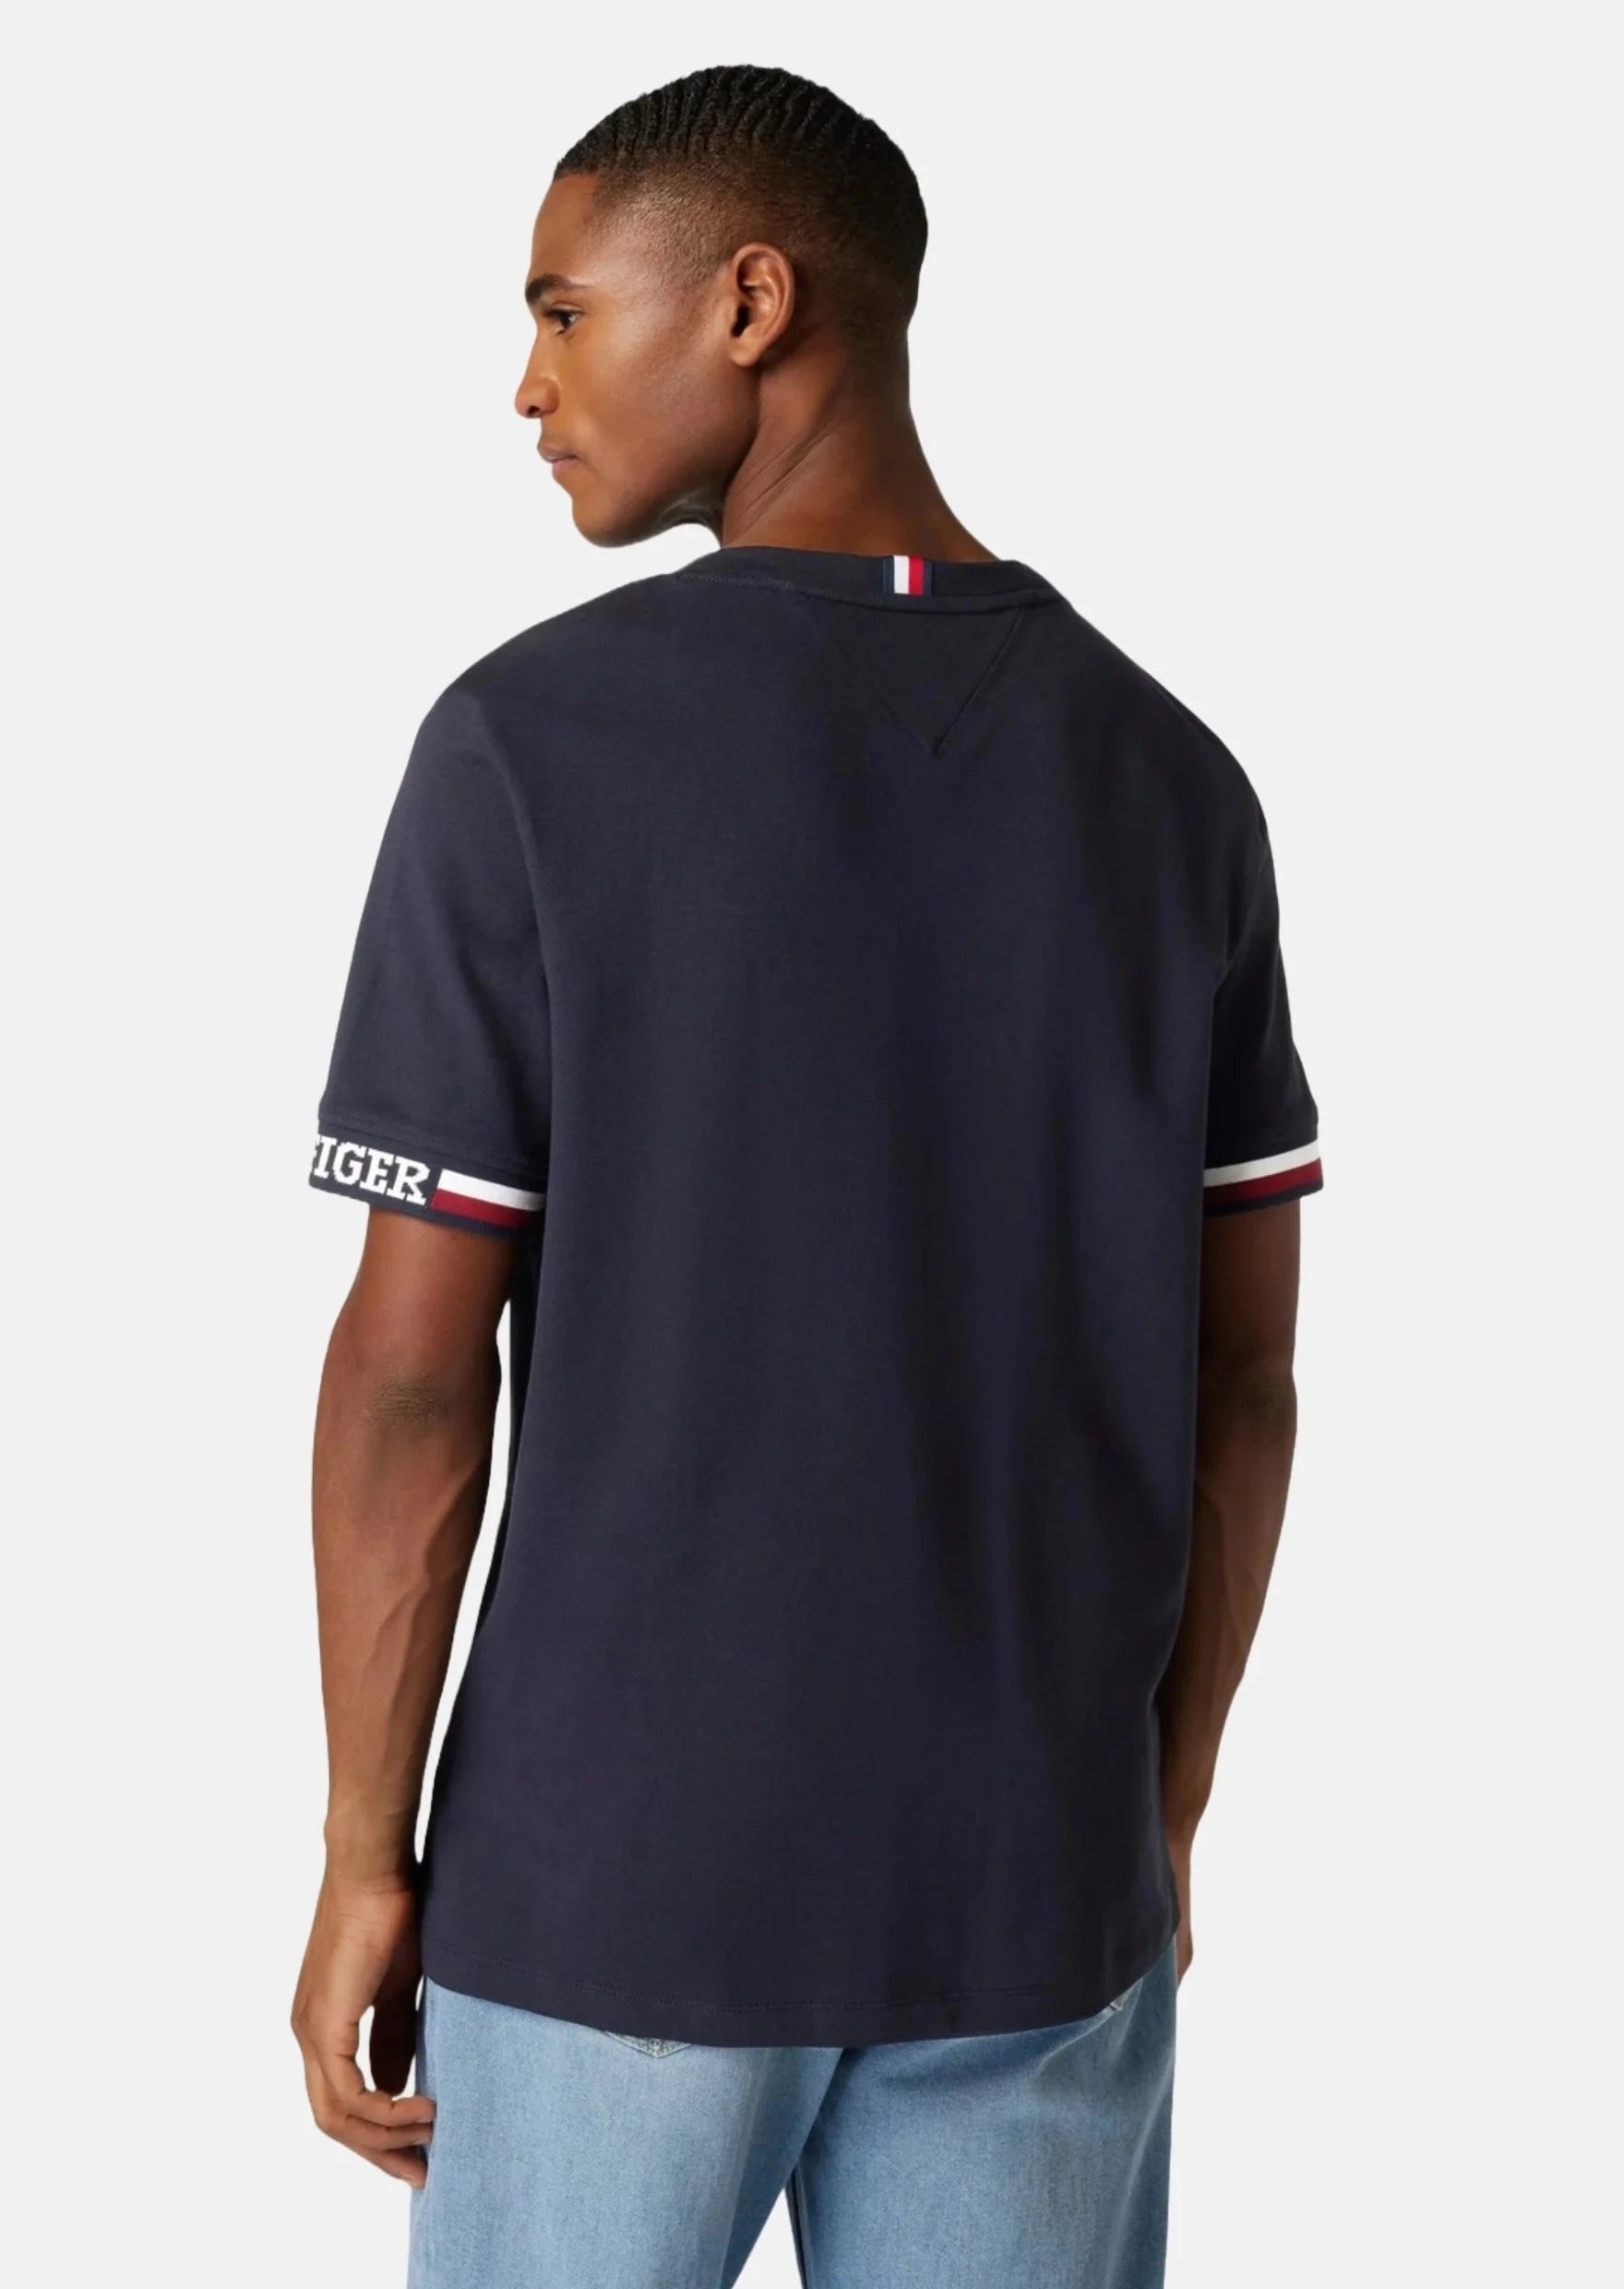 T-Shirt à liserés Tommy Hilfiger marine en coton bio stretch | Georgespaul